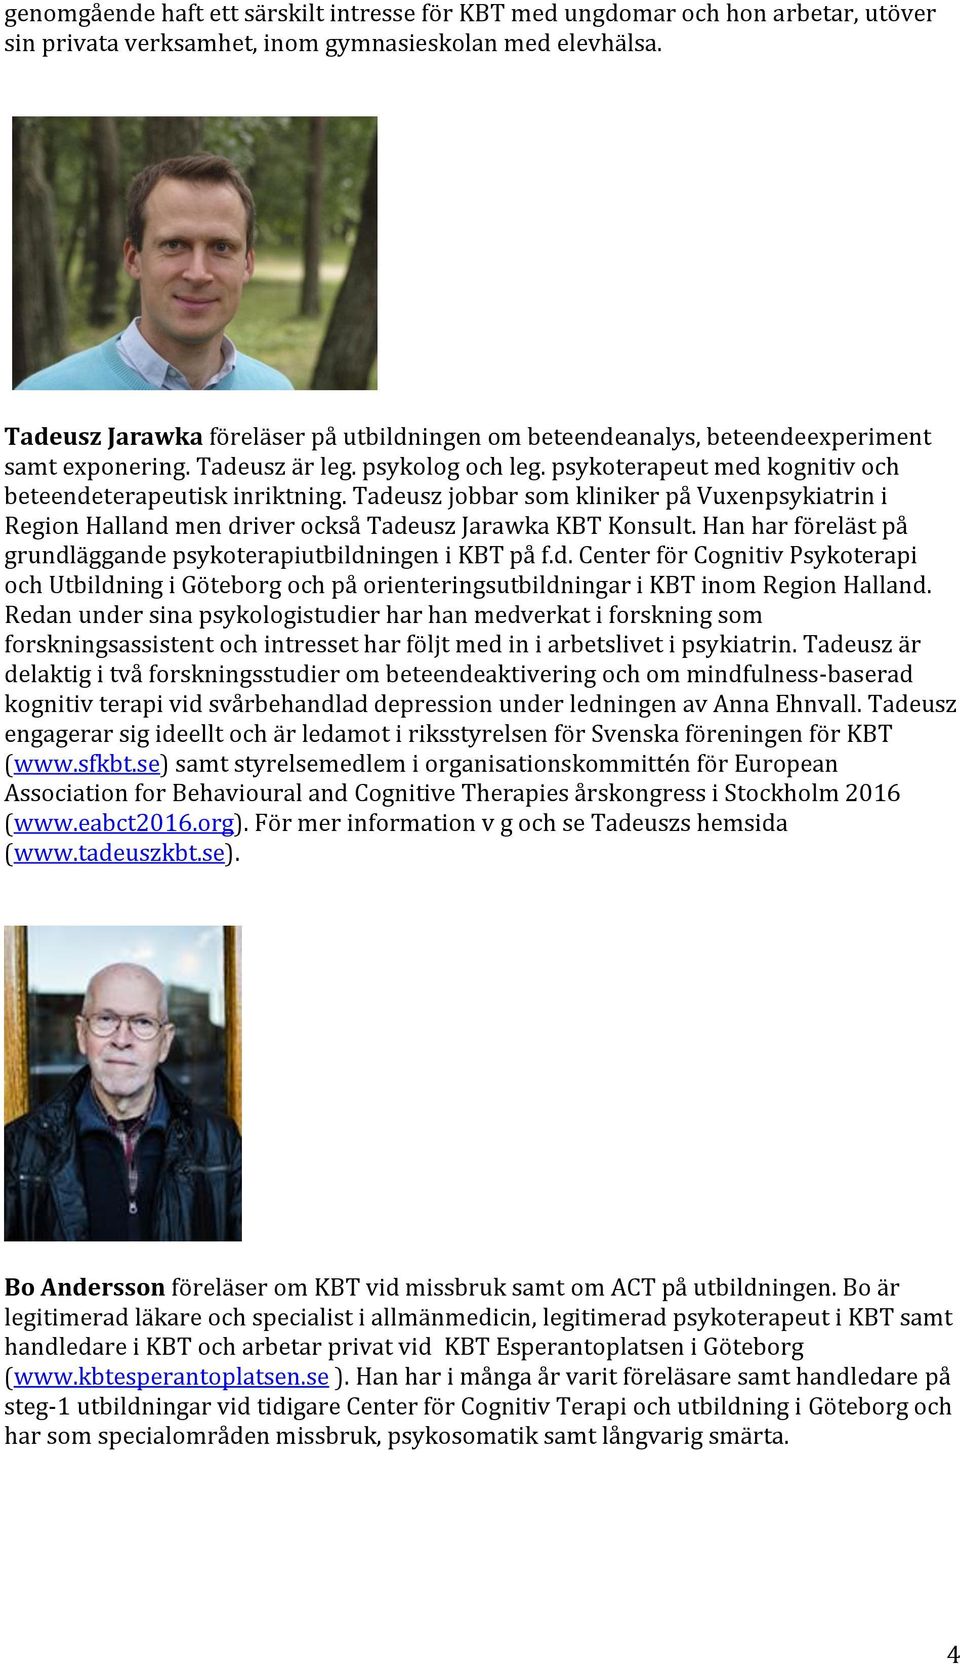 Tadeusz jobbar som kliniker på Vuxenpsykiatrin i Region Halland men driver också Tadeusz Jarawka KBT Konsult. Han har föreläst på grundläggande psykoterapiutbildningen i KBT på f.d. Center för Cognitiv Psykoterapi och Utbildning i Göteborg och på orienteringsutbildningar i KBT inom Region Halland.